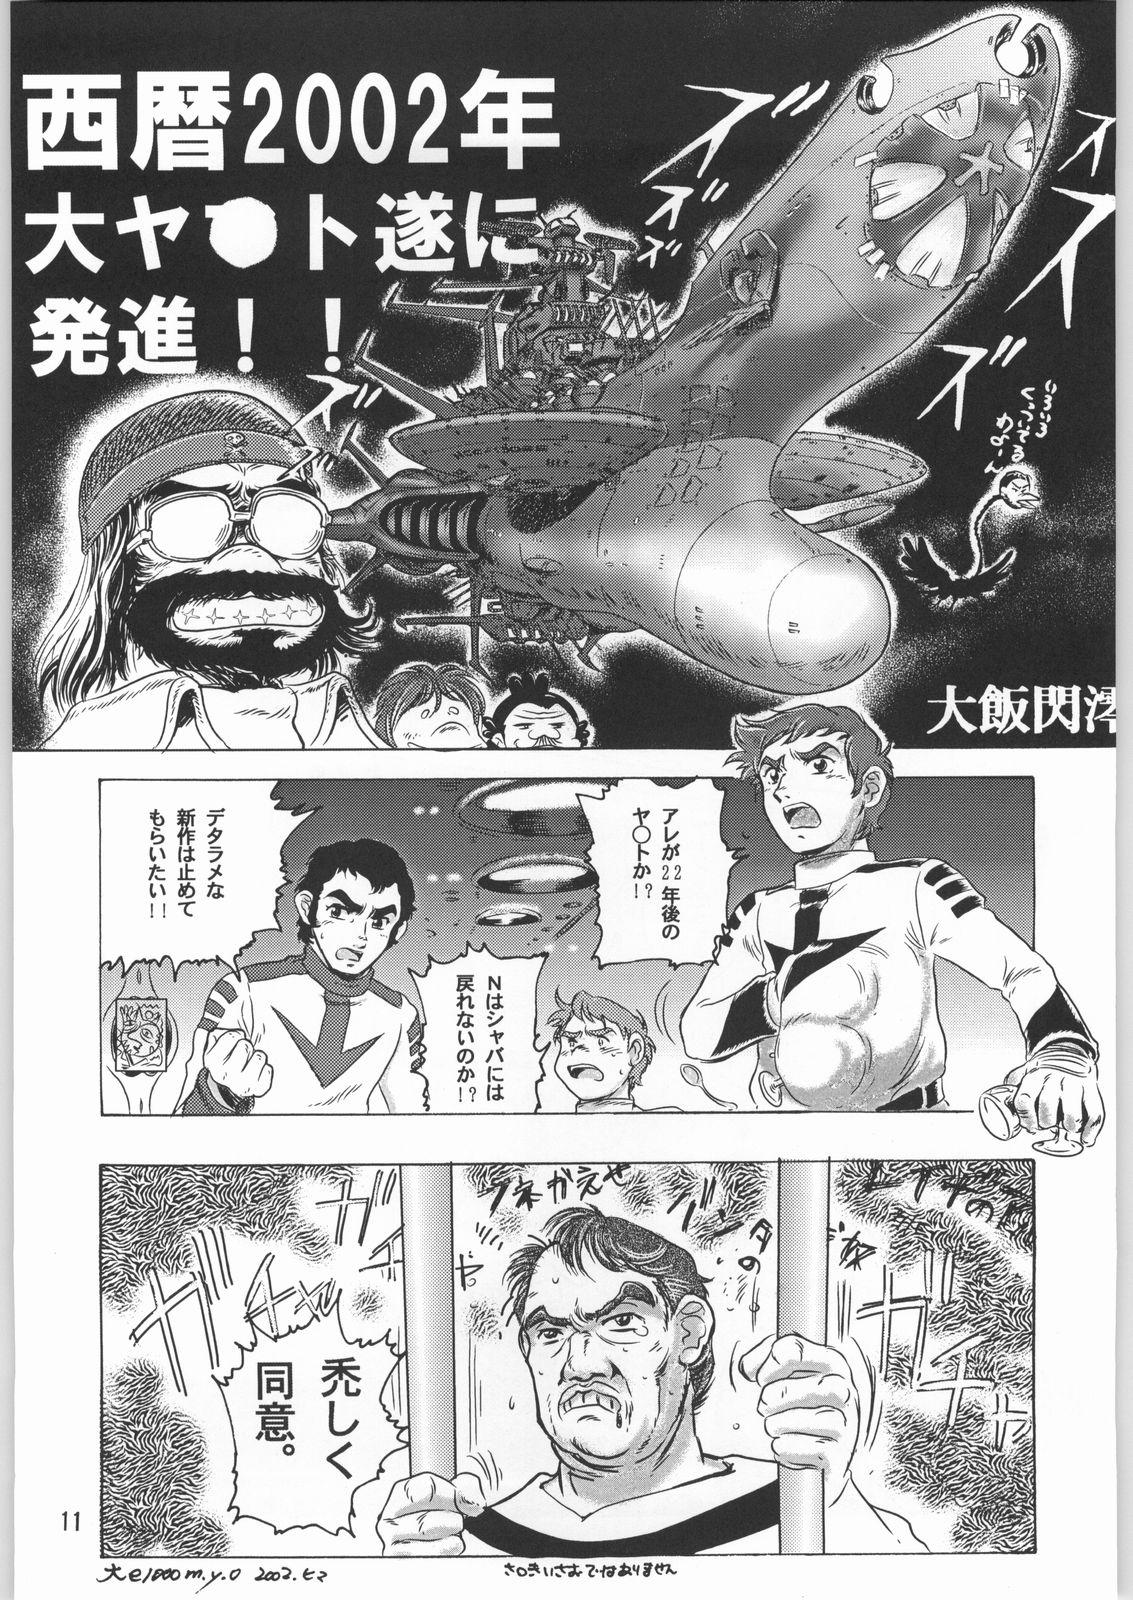 Gets Megaton Punch 1 - Space battleship yamato Chobits Mouth - Page 10